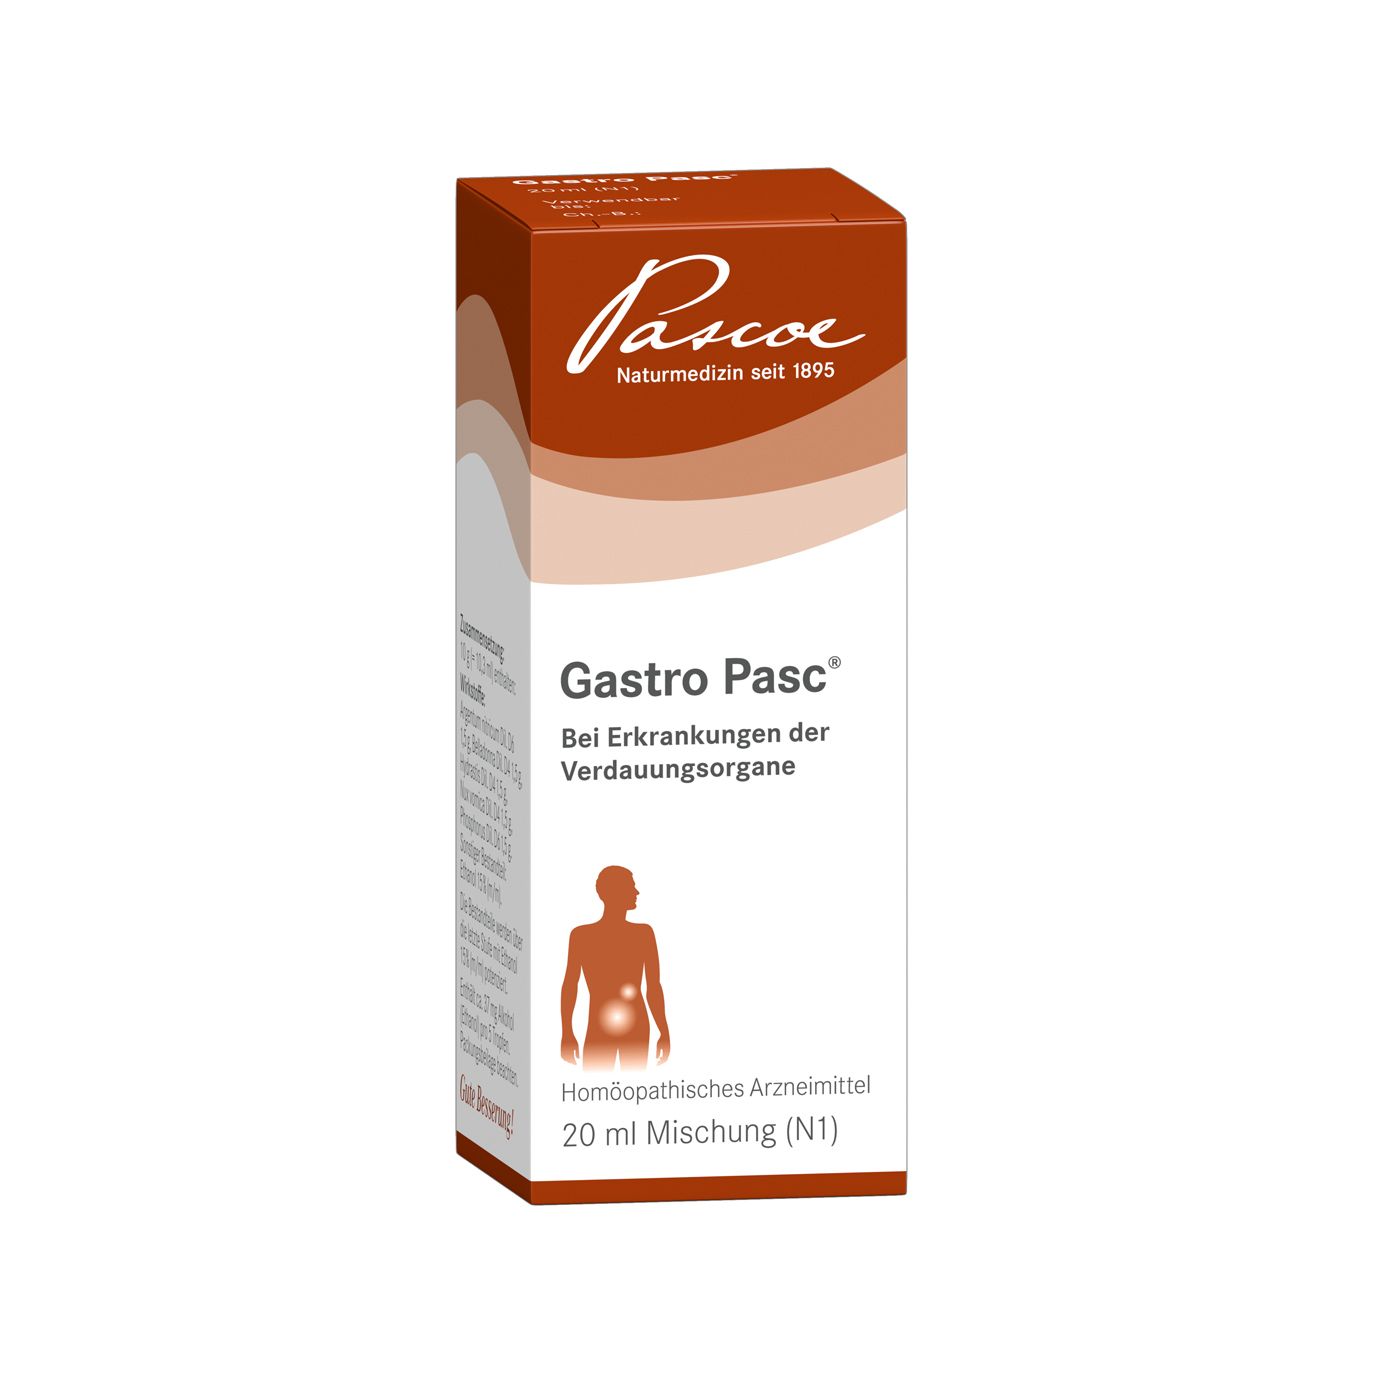 Gastro Pasc®